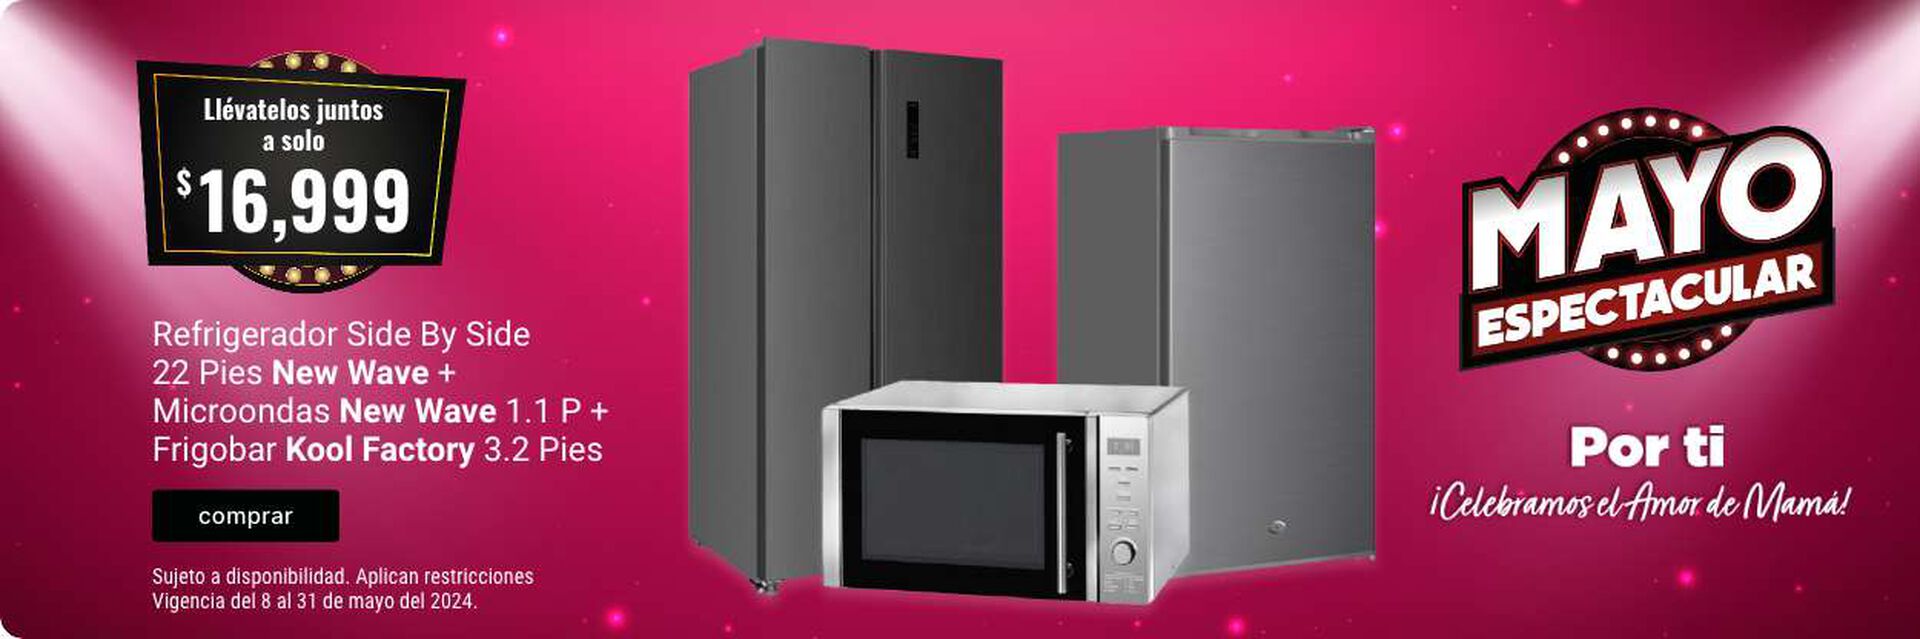 Refrigerador + Microondas + Frigobar New Wave llevatelos todos a solo $16,999